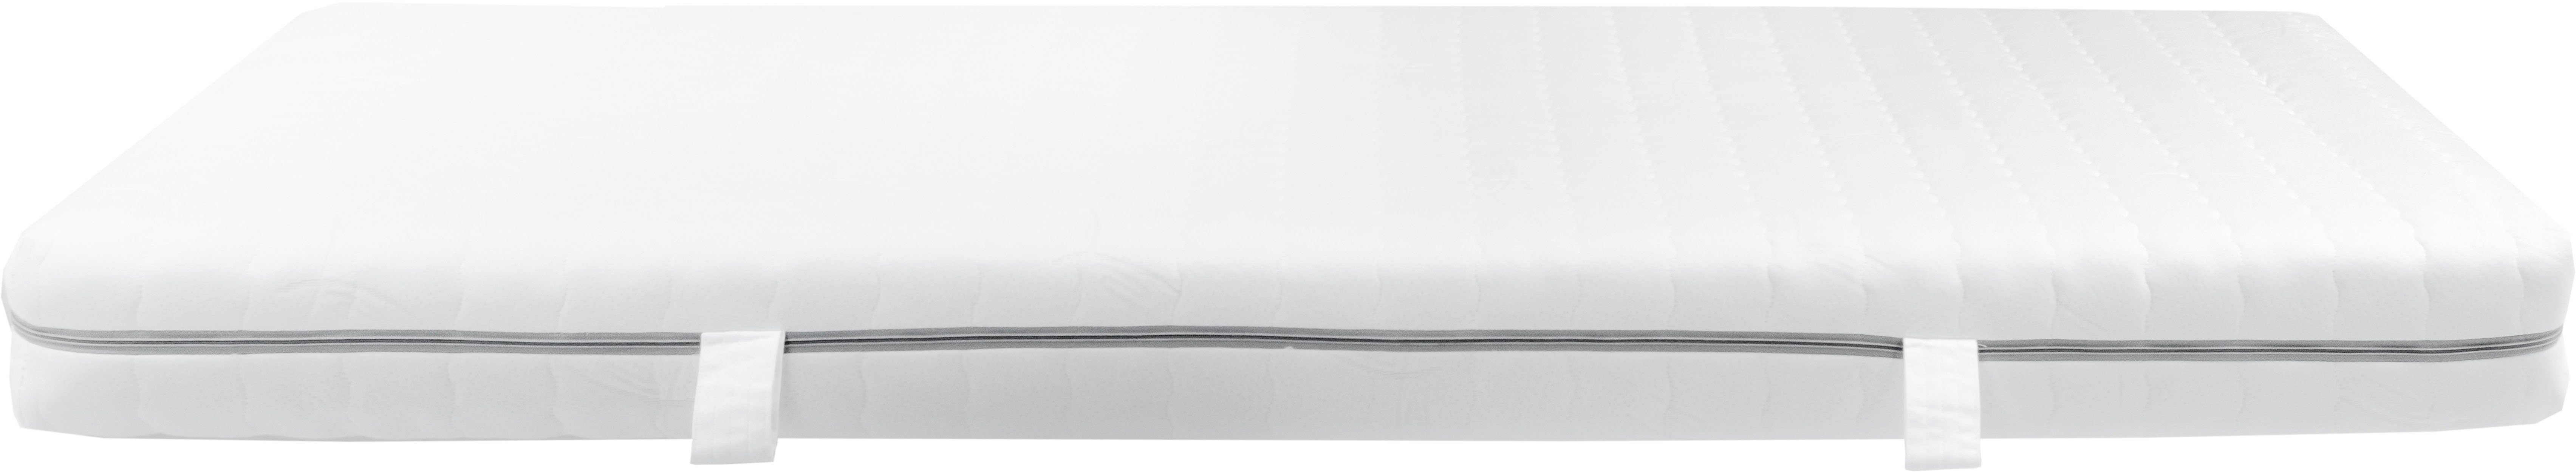 Komfortschaummatratze »Breckle EvoX Komfort«, Breckle, 17 cm hoch, Raumgewicht: 35-kaufen